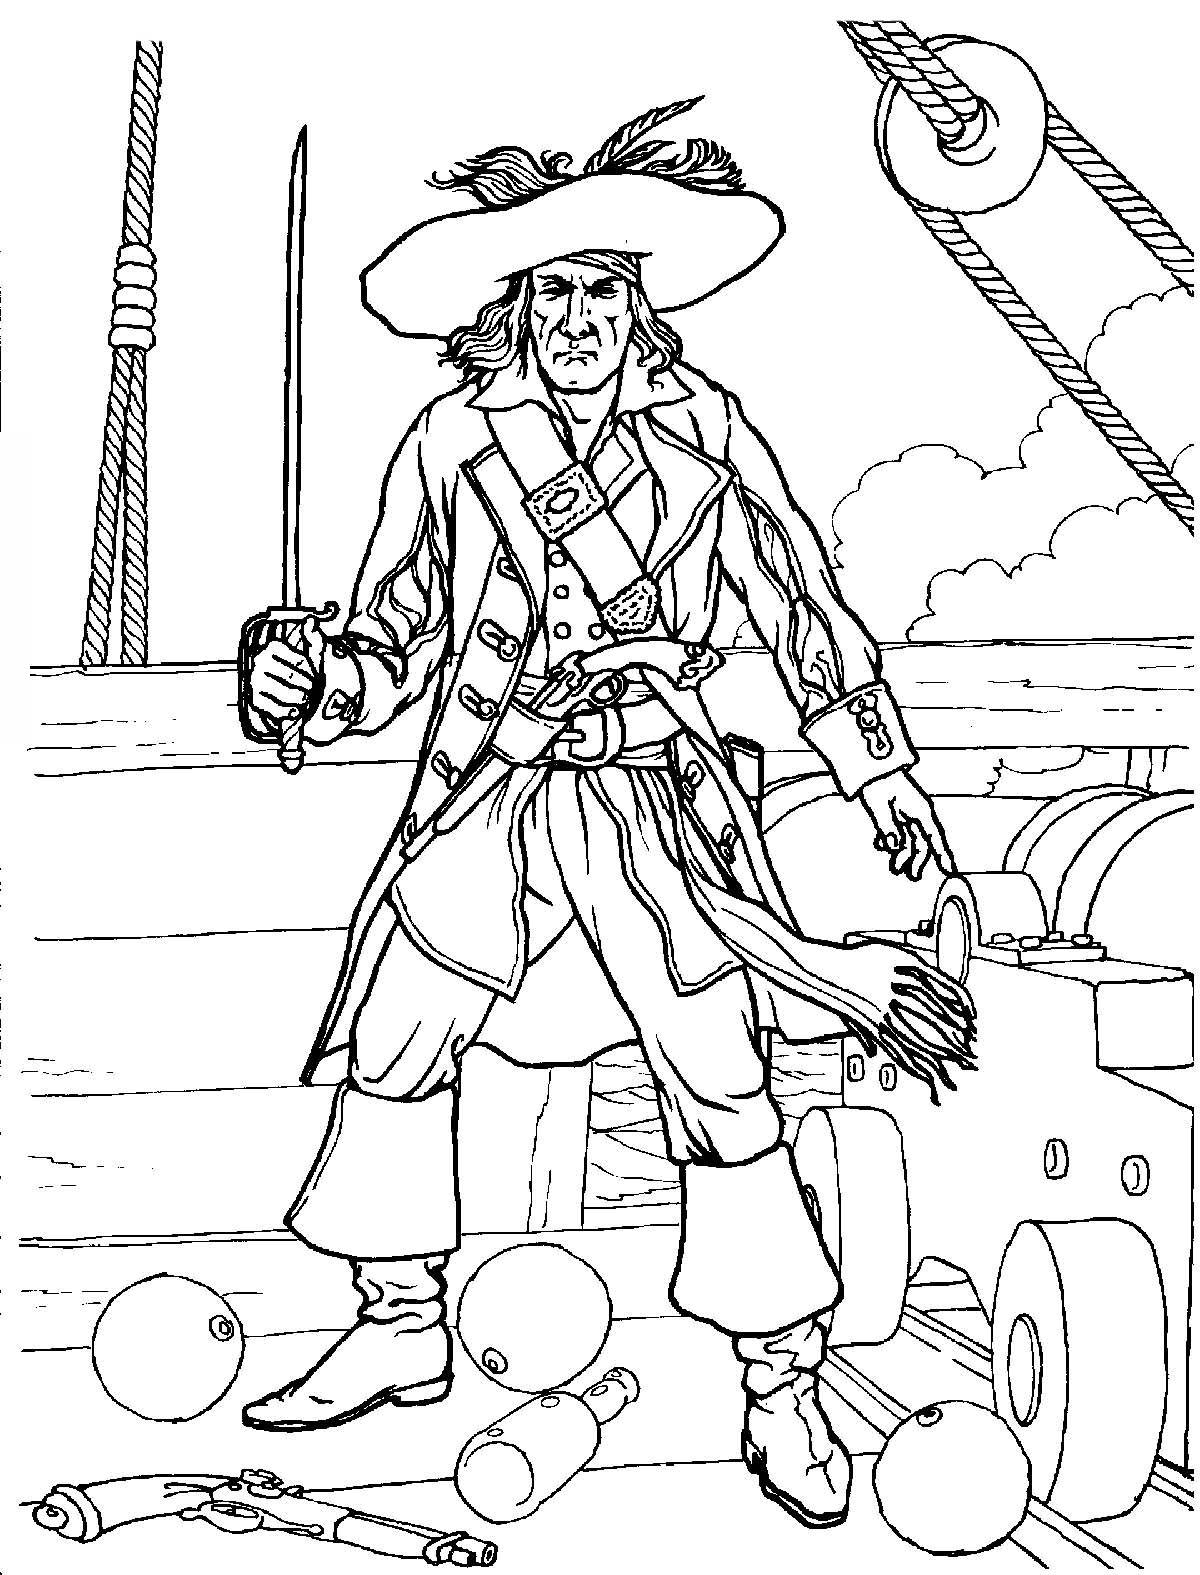 Barbossa captain